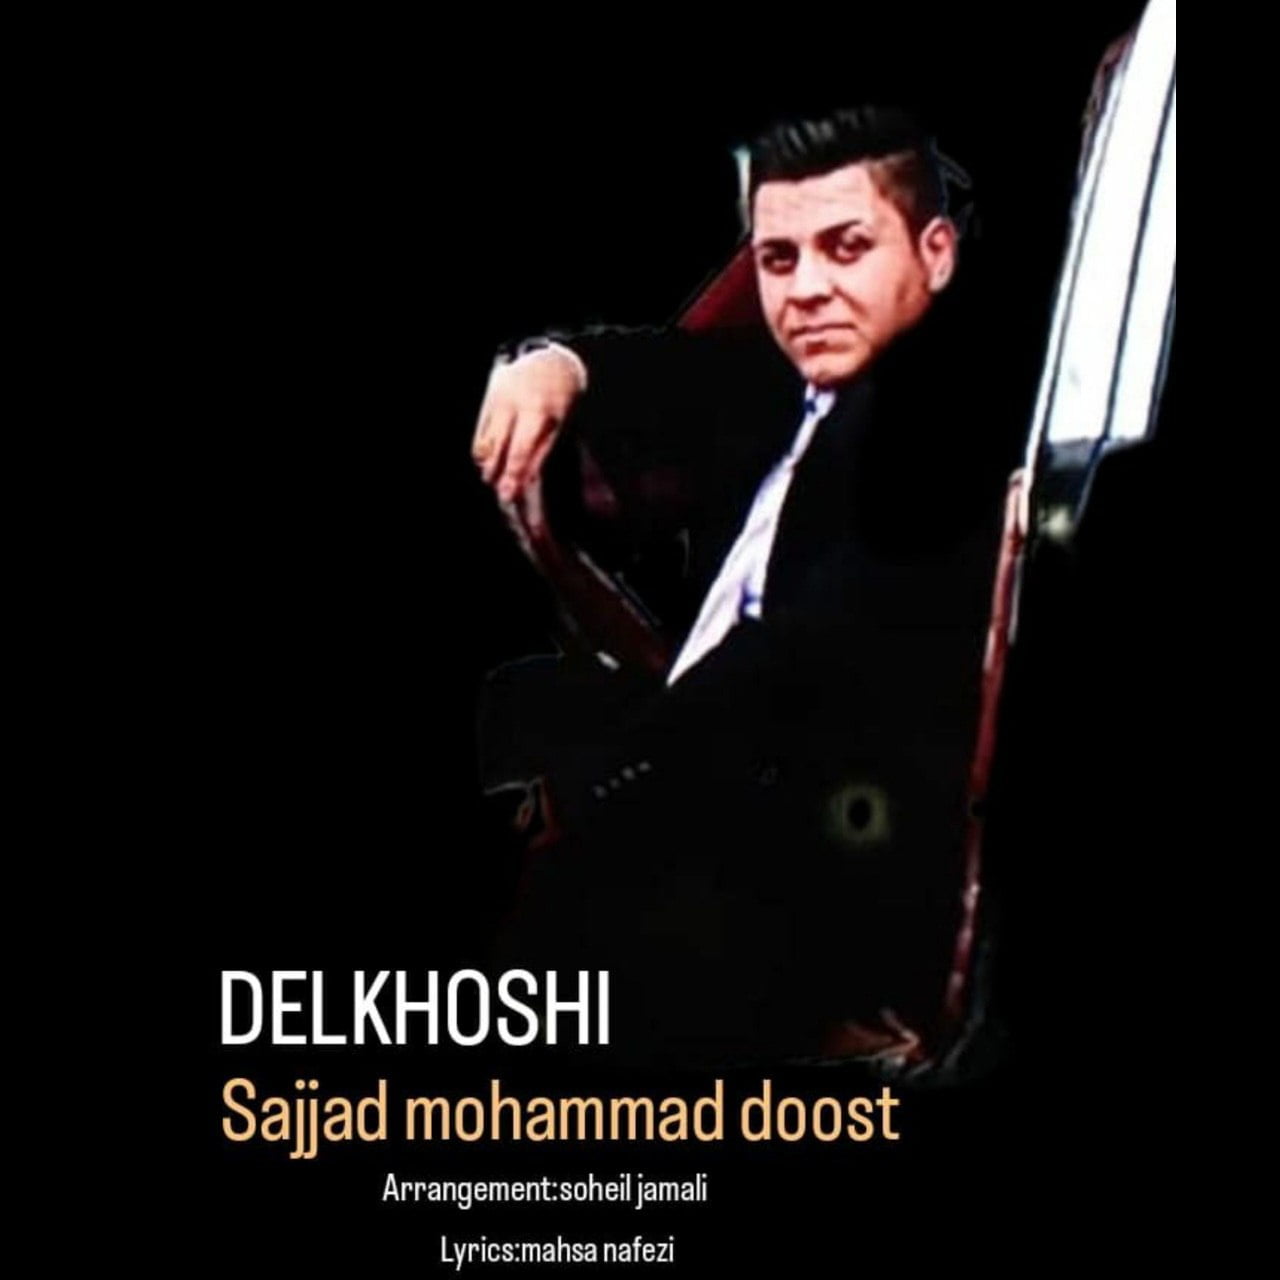 دانلود آهنگ جدید سجاد محمد دوست با عنوان دلخوشی